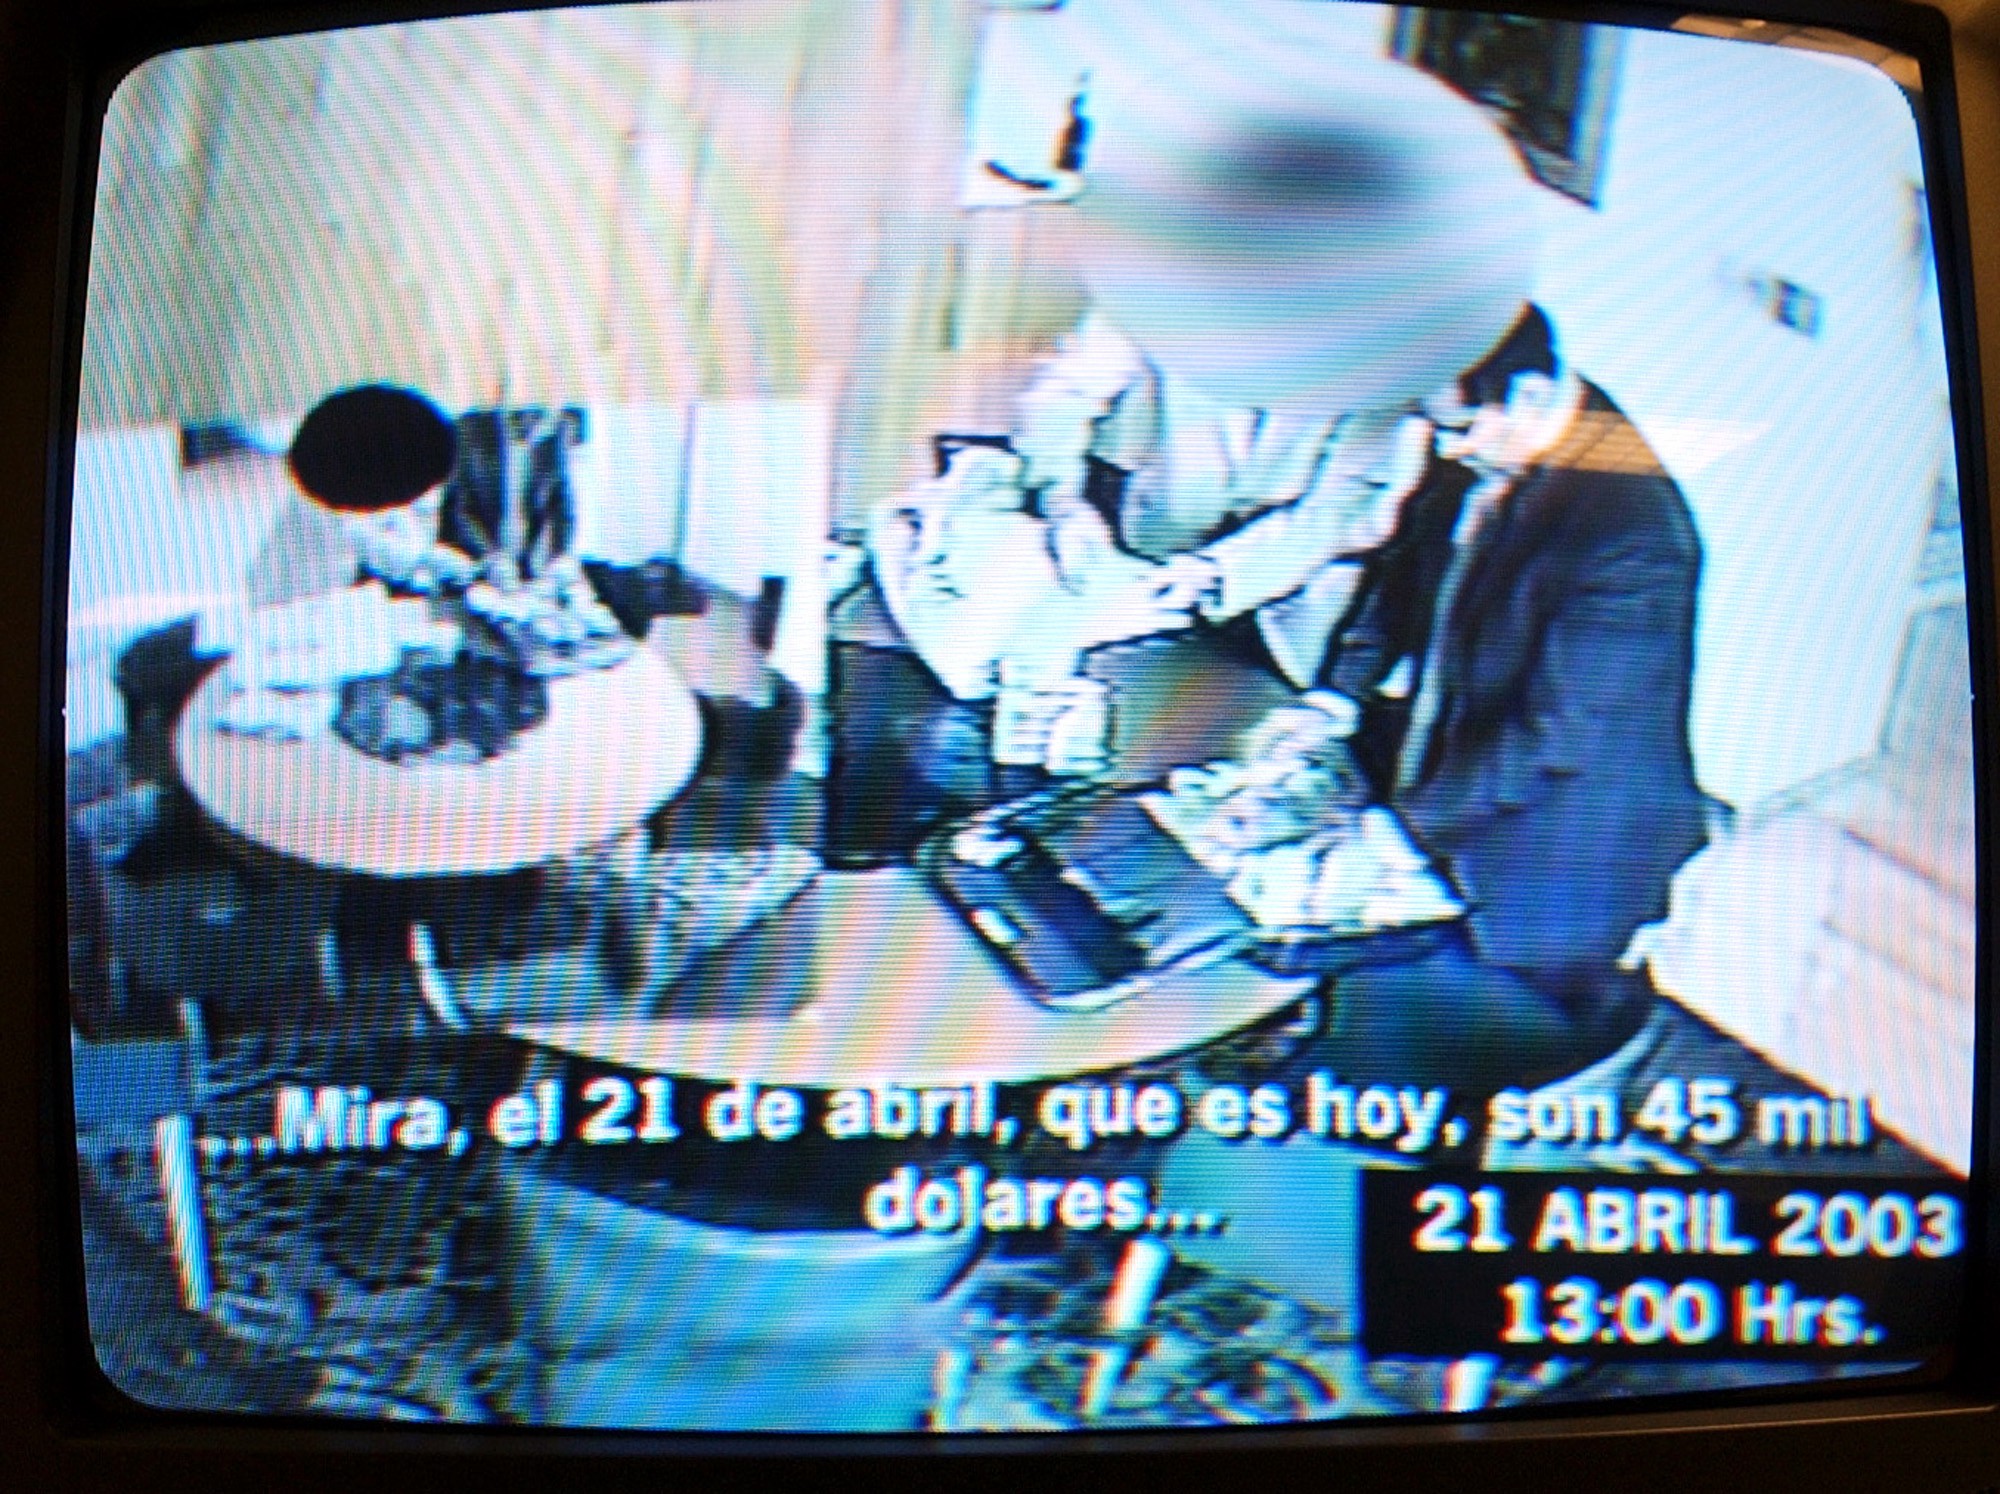 Imagen del video donde René Bejarano recibe dinero en un acto de corrupción grabado.